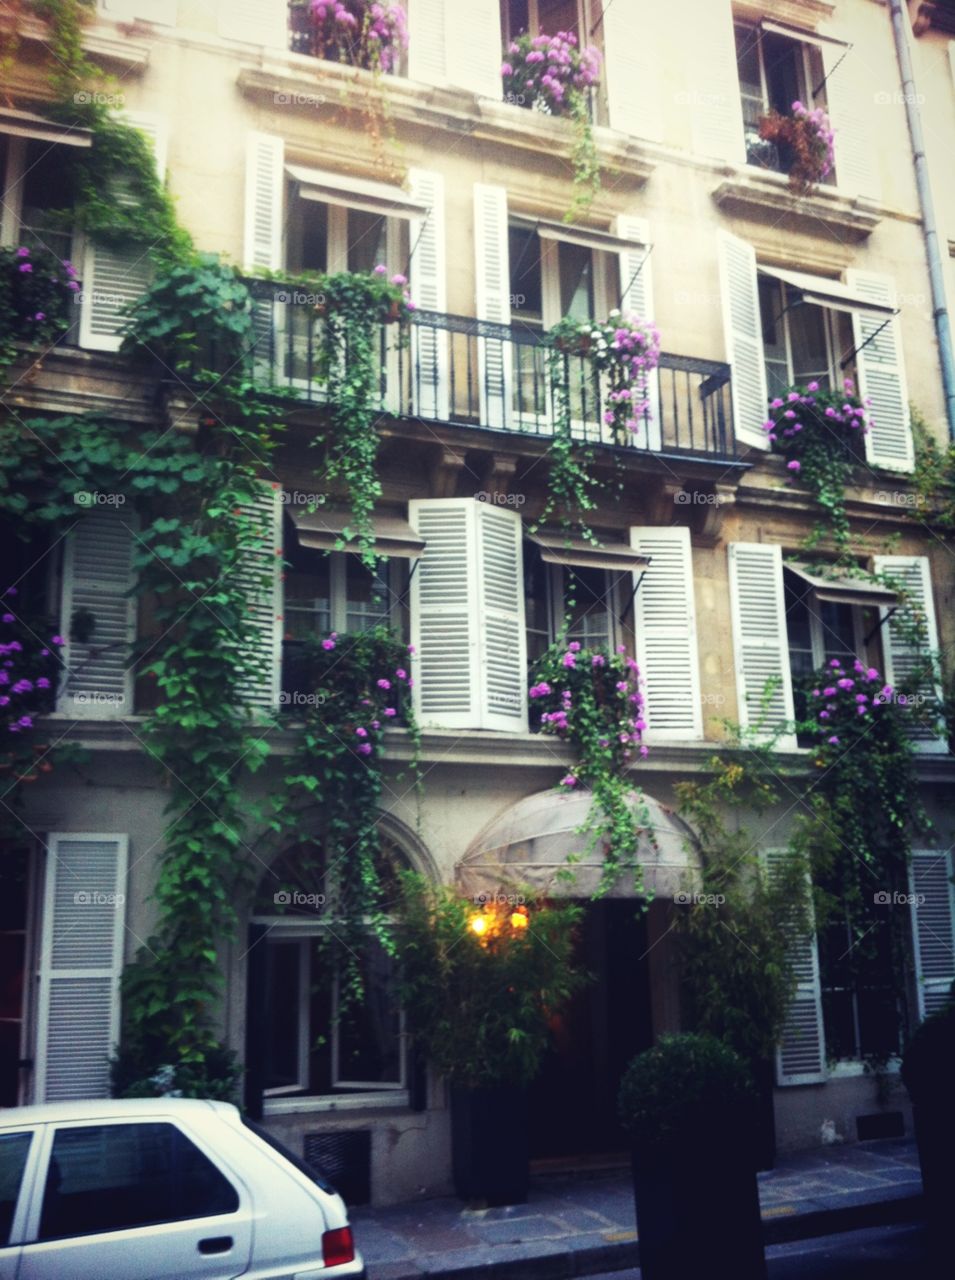 ✳️ Le Saint Hotel, Paris ✳️ http://jkvdtsar.tumblr.com/ (https://www.instagram.com/p/BGEwdesoDxm/?taken-by=jkvdtsar)